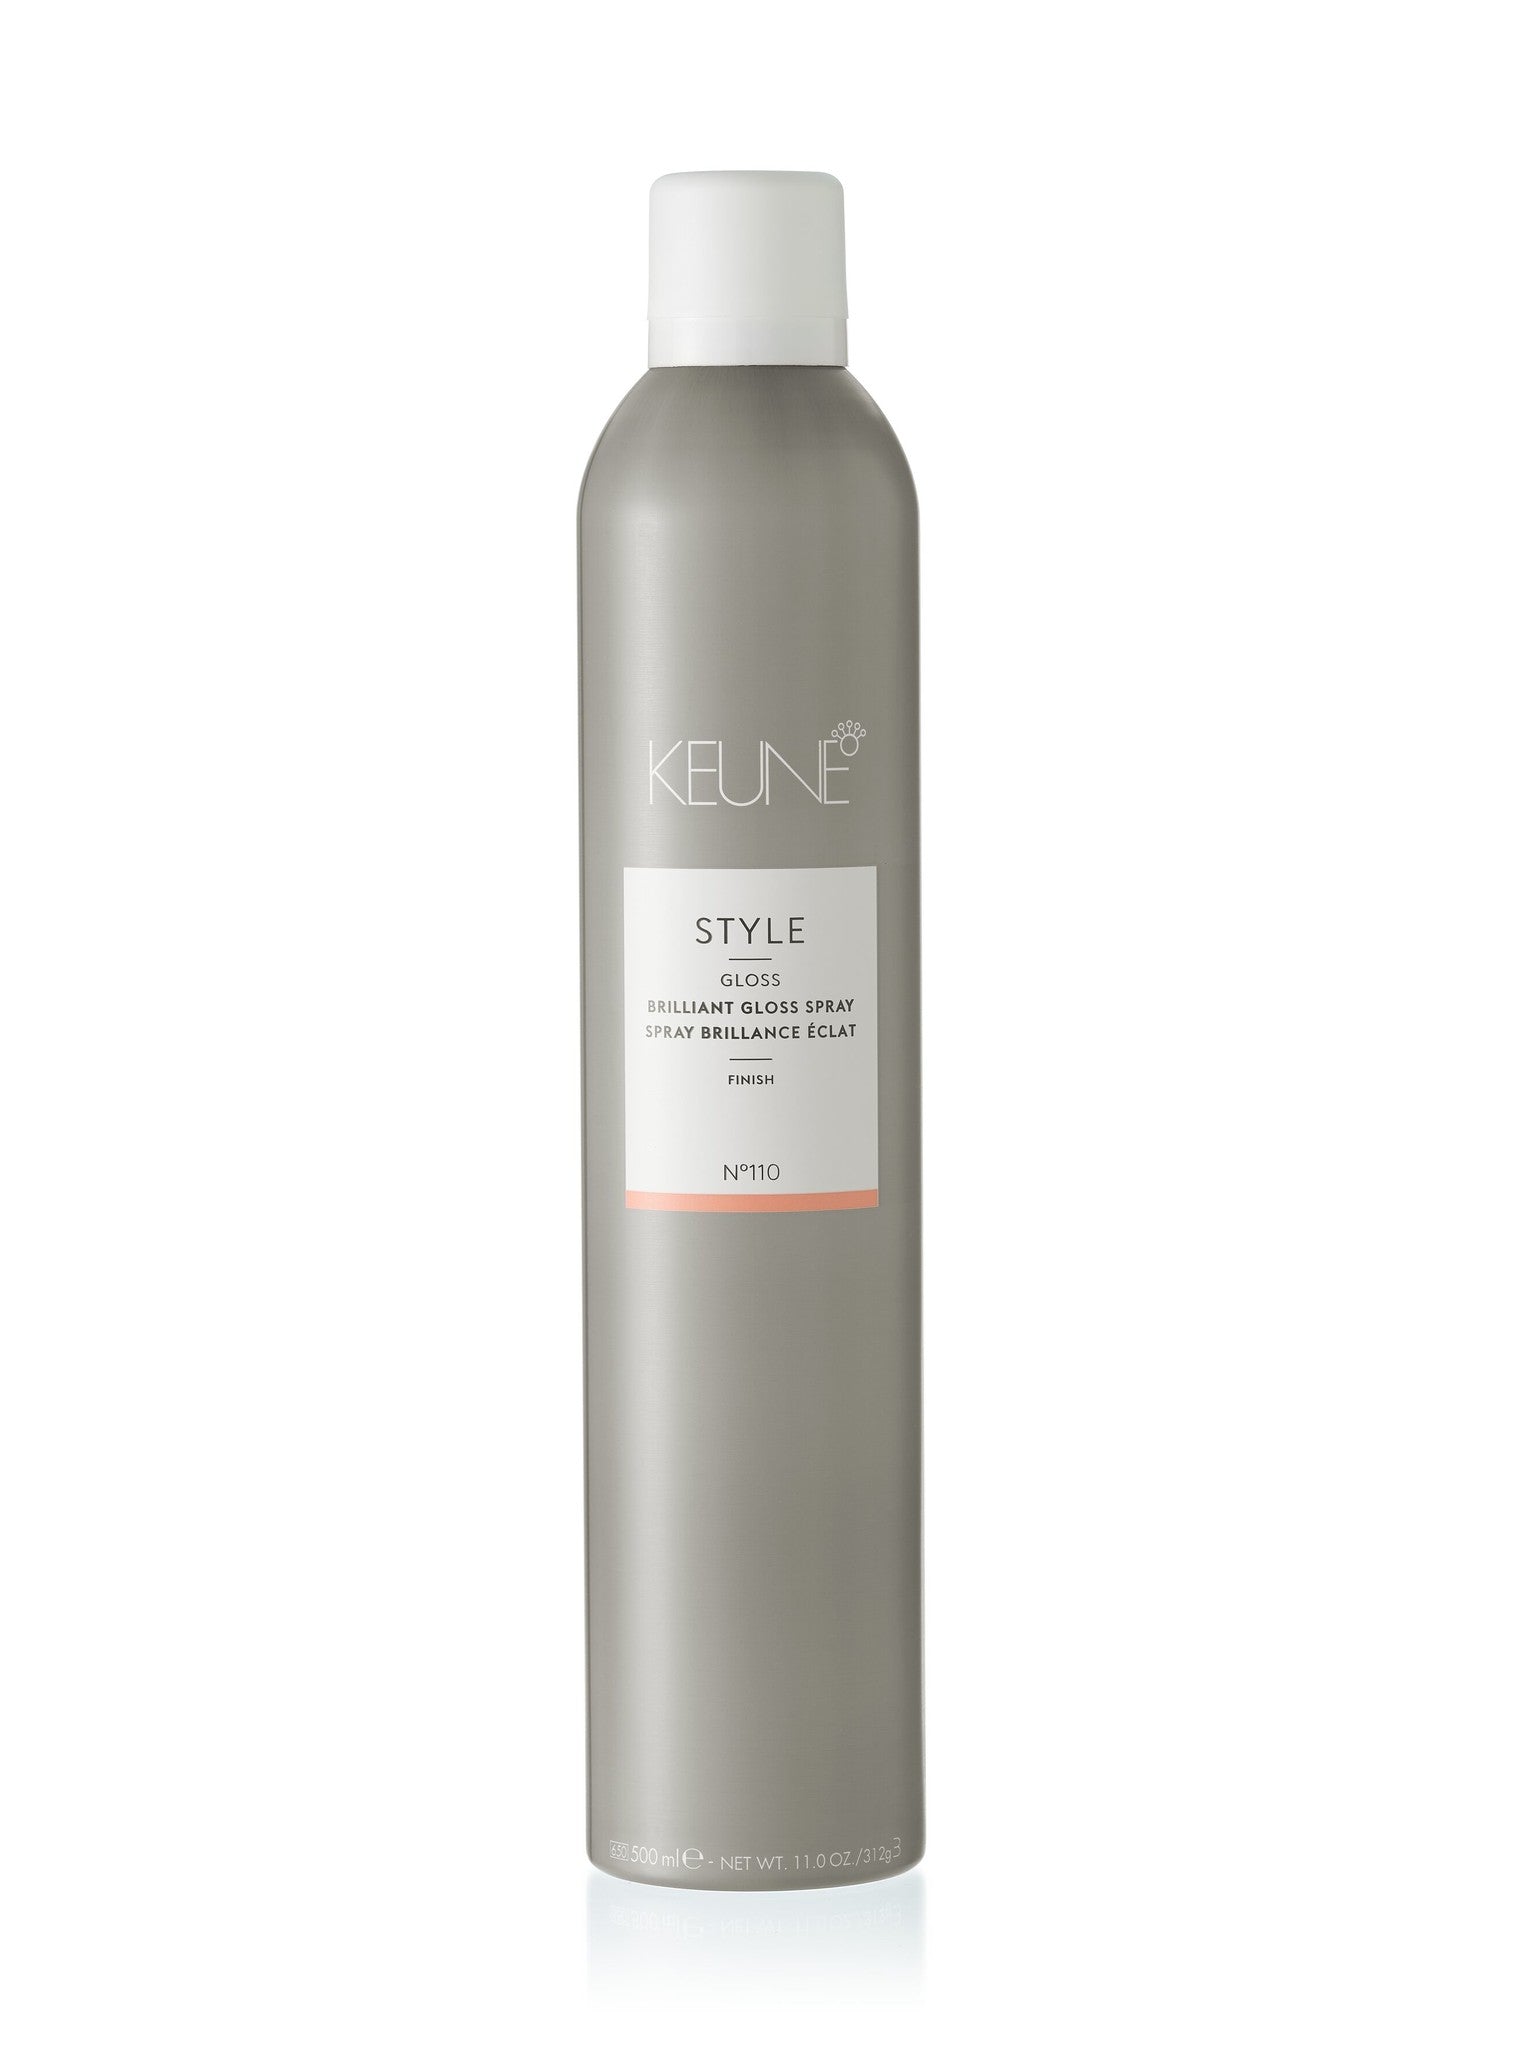 Keune Style Brilliant Gloss Spray CFH Care For Hair #500ml